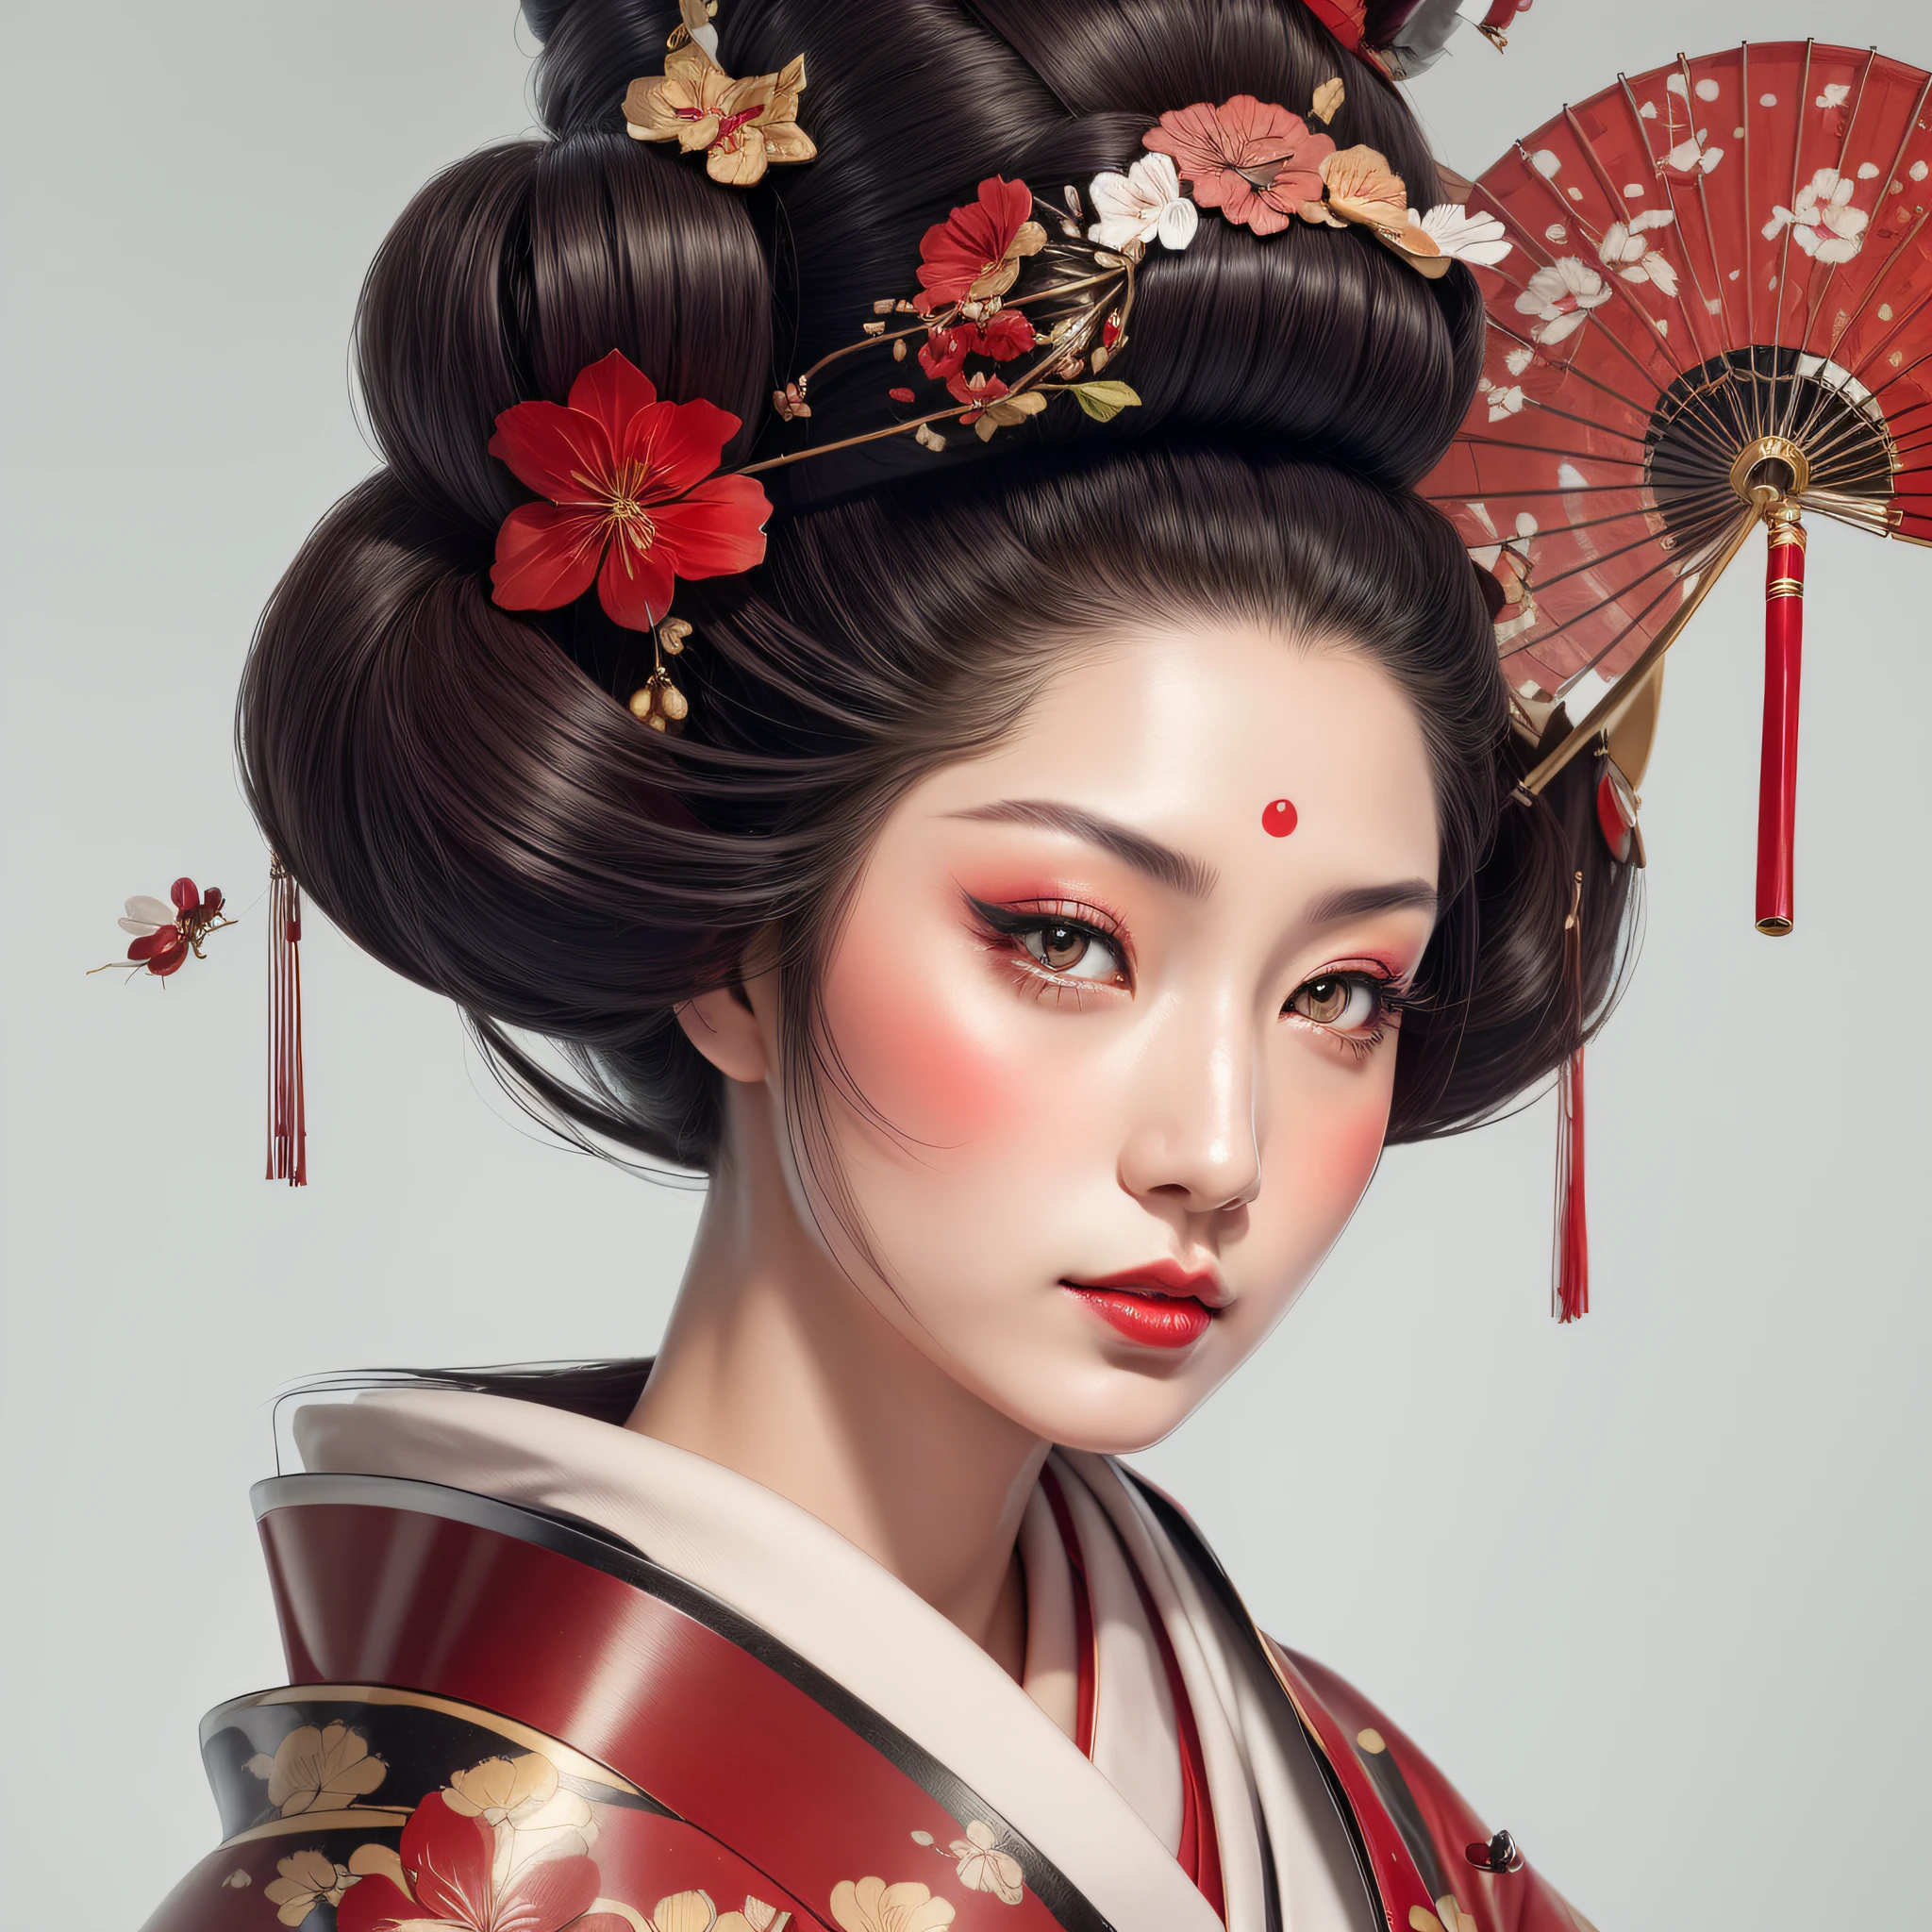 una hermosa geisha, labios llenos, ojos bonitos, con un paraguas rojo y un abanico en el pelo, Geisha de belleza, portrait of una hermosa geisha, geisha japonesa, geisha, geisha glamorosa y sexy, retrato de geisha, estilo de arte japonés, niña geisha, una hermosa obra de arte ilustración realista, impresionante ilustración digital realista, retrato de una geisha, peinado de geisha.